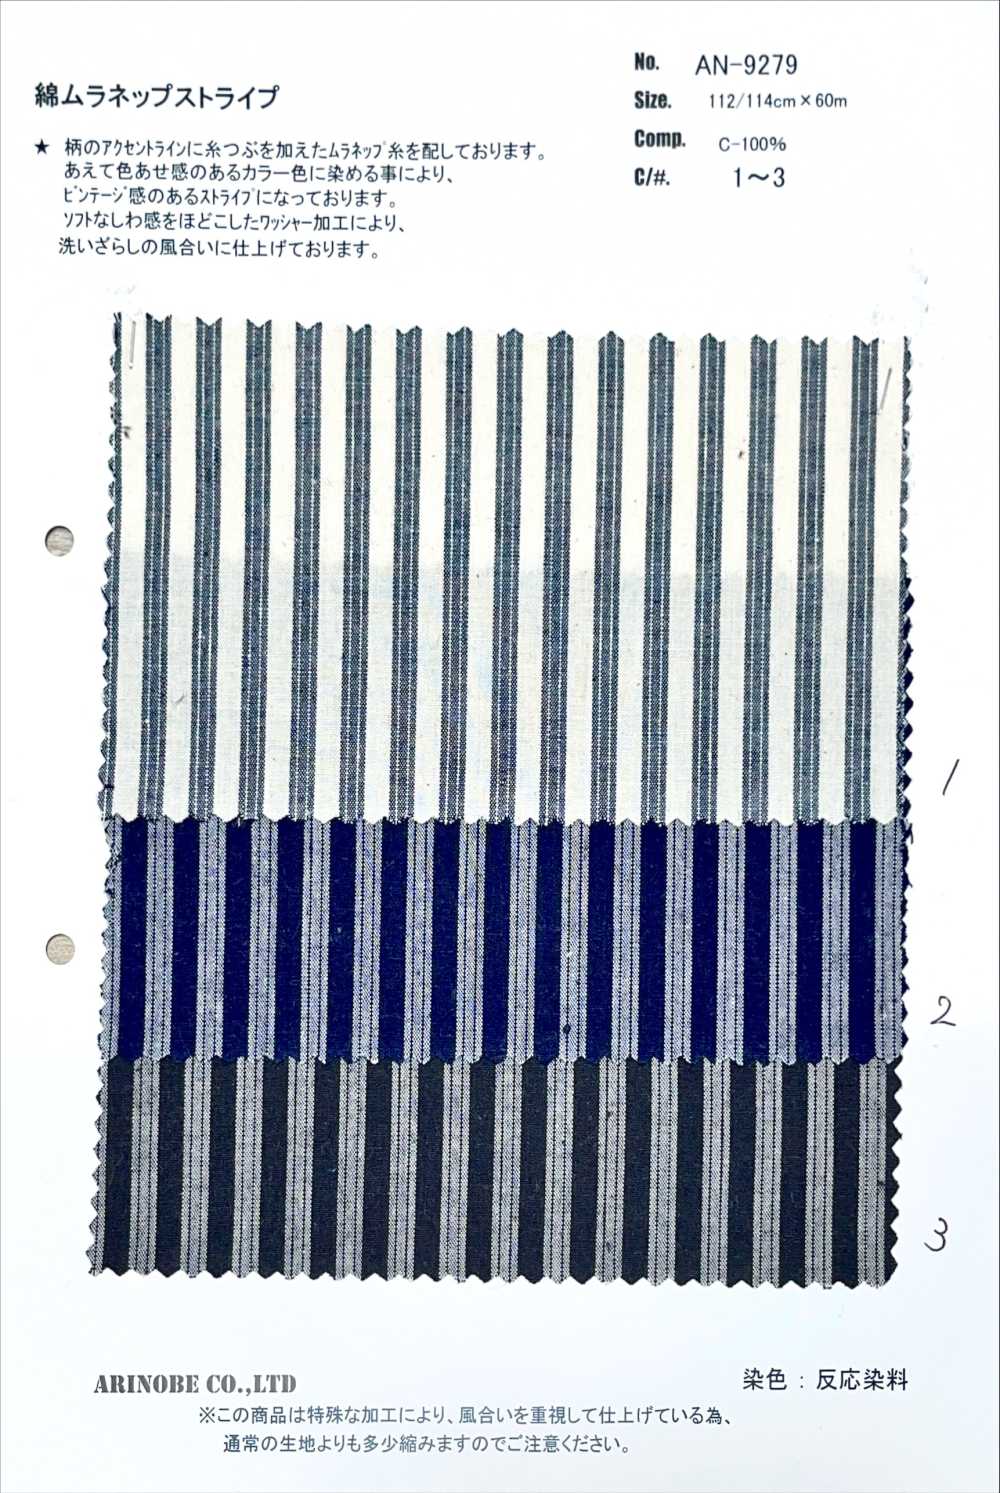 AN-9279 Algodón Muranep Raya[Fabrica Textil] ARINOBE CO., LTD.